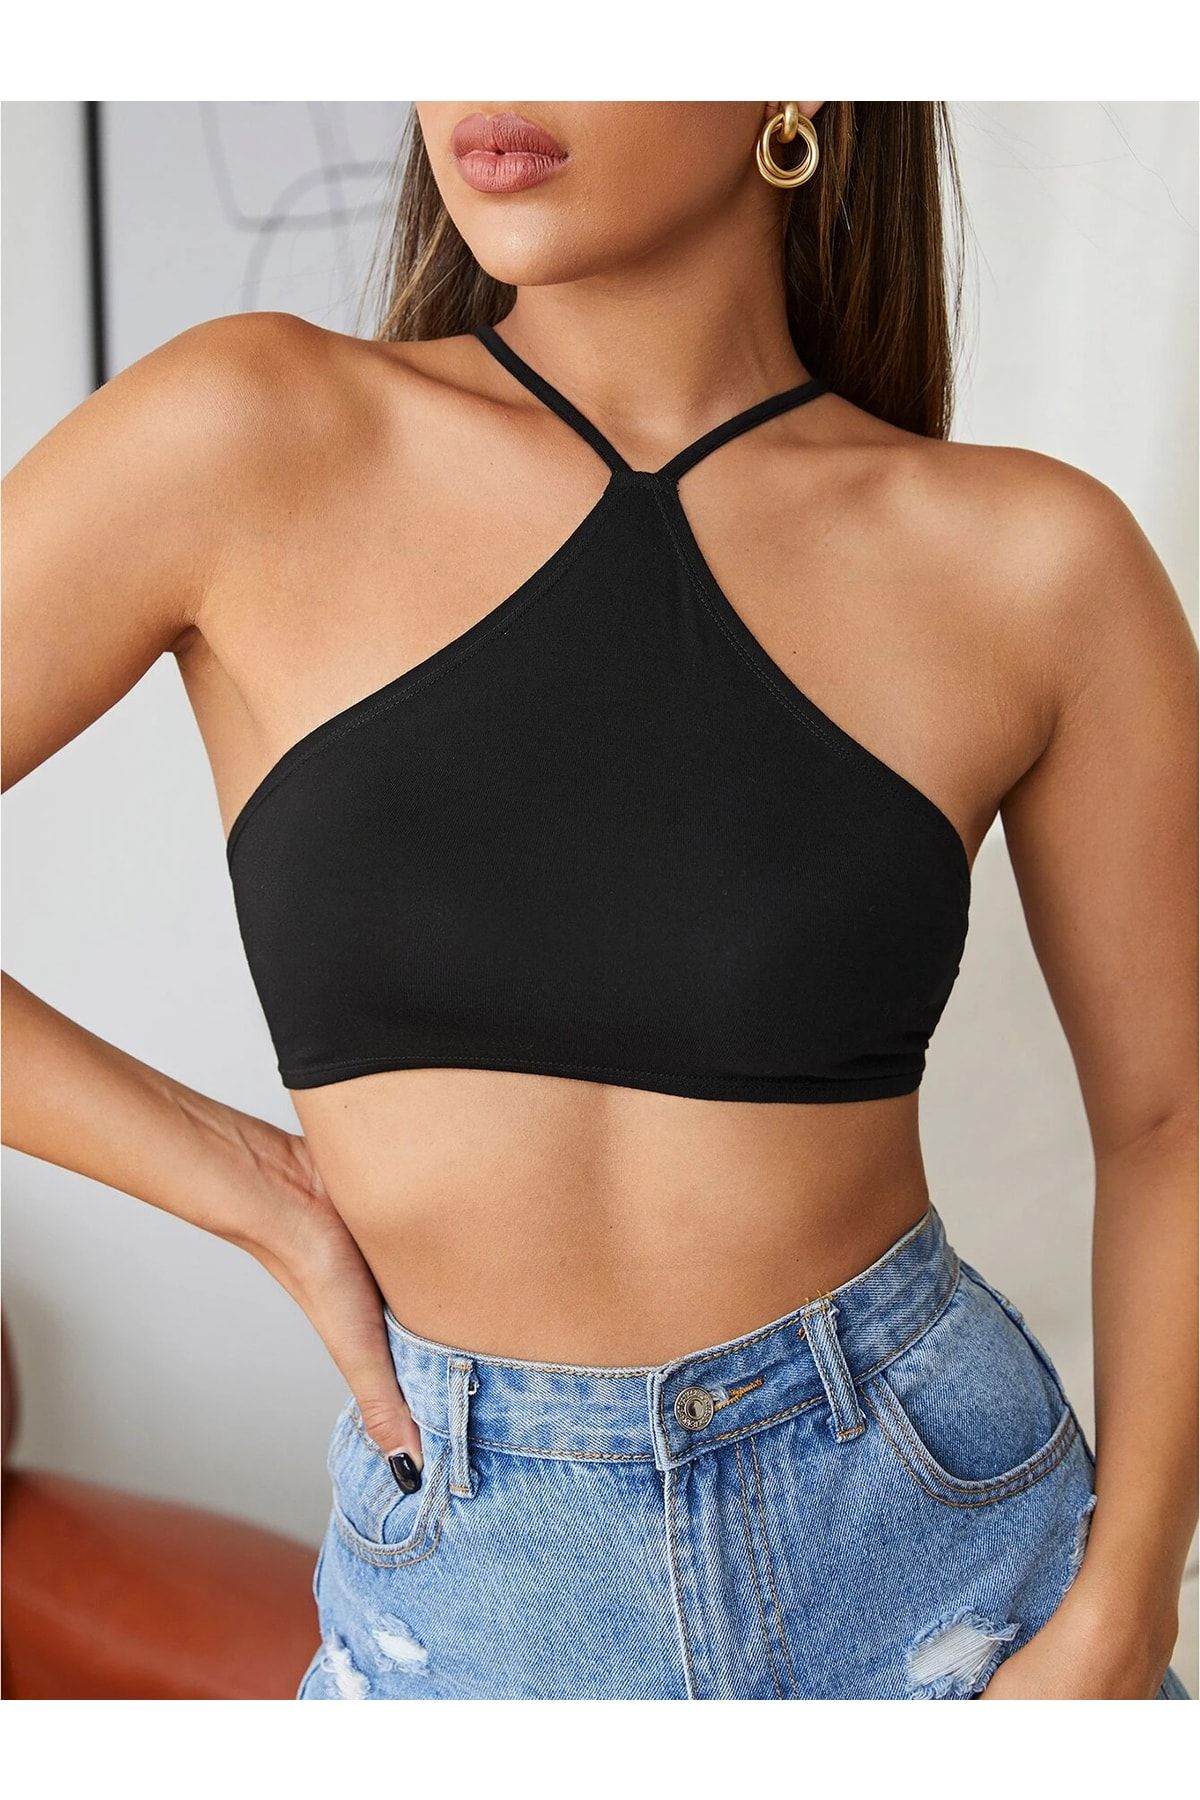 Liona Kadın Siyah Renk Sırtı Açık Bağcıklı Sütyen Stil Super Crop Halter Bluz